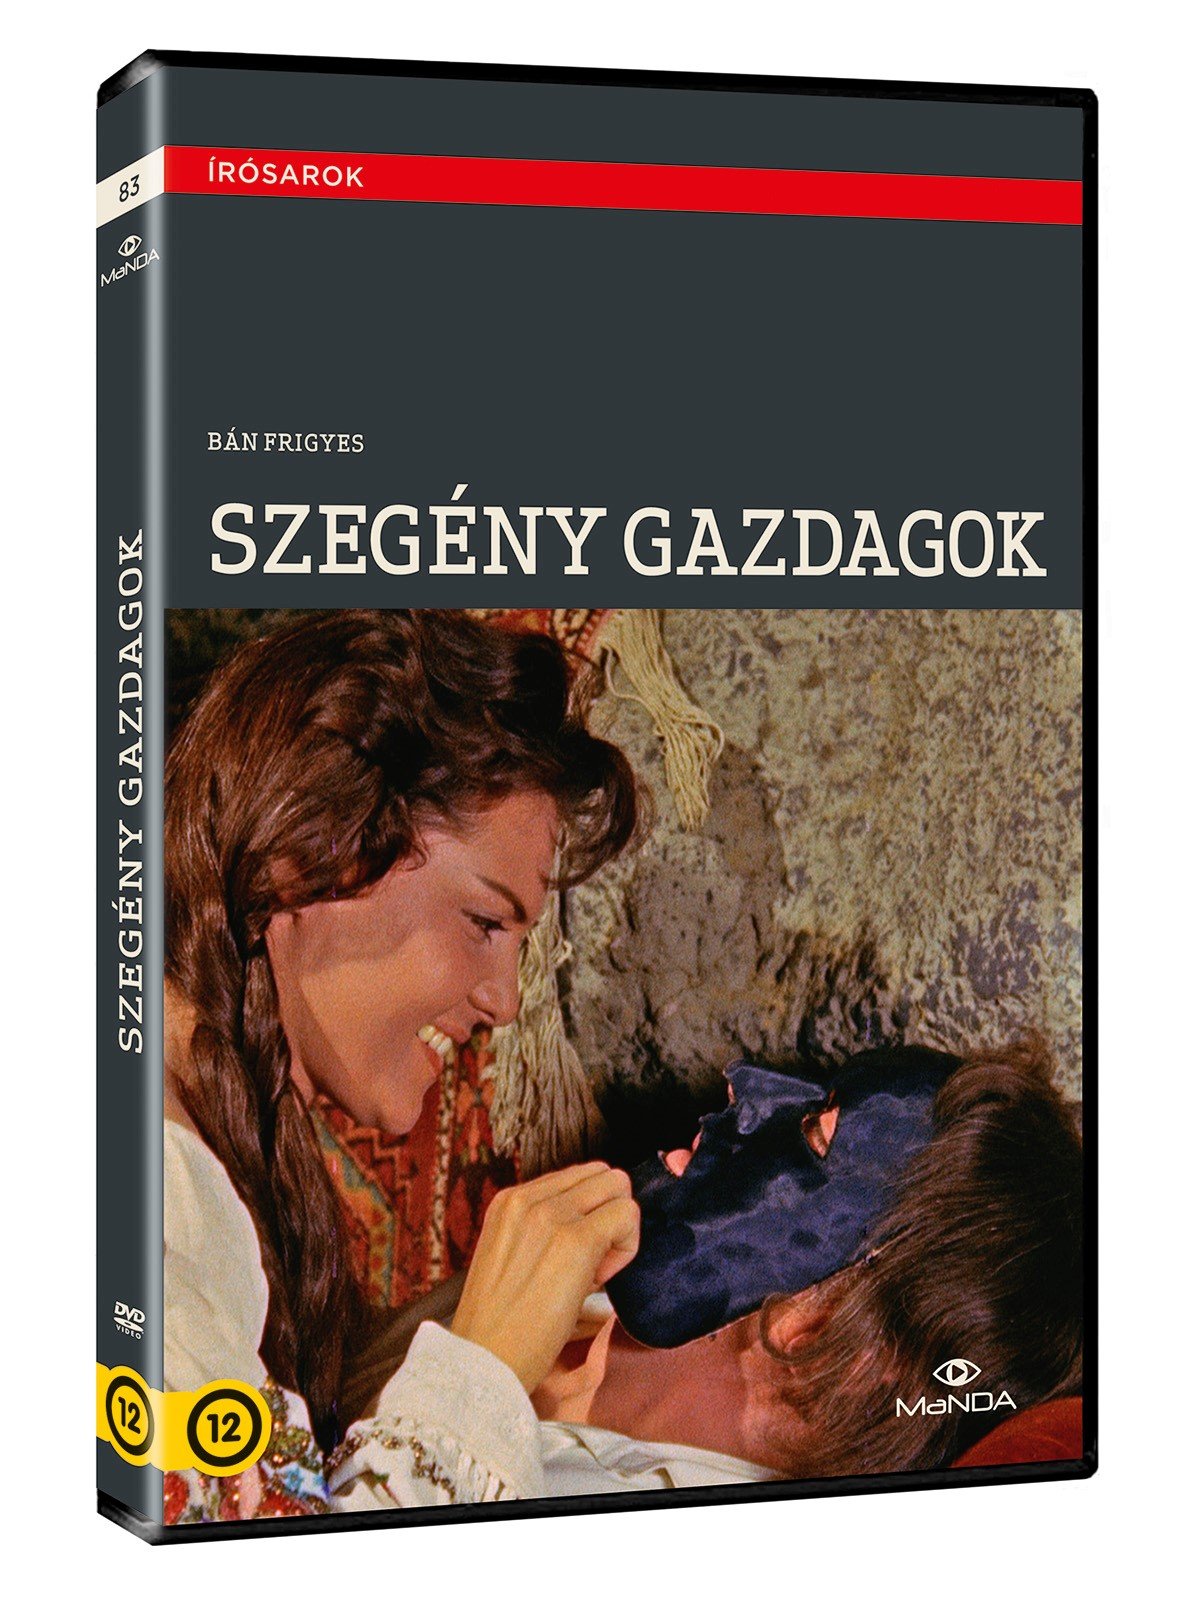 Szegény gazdagok (1959) with English Subtitles on DVD on DVD